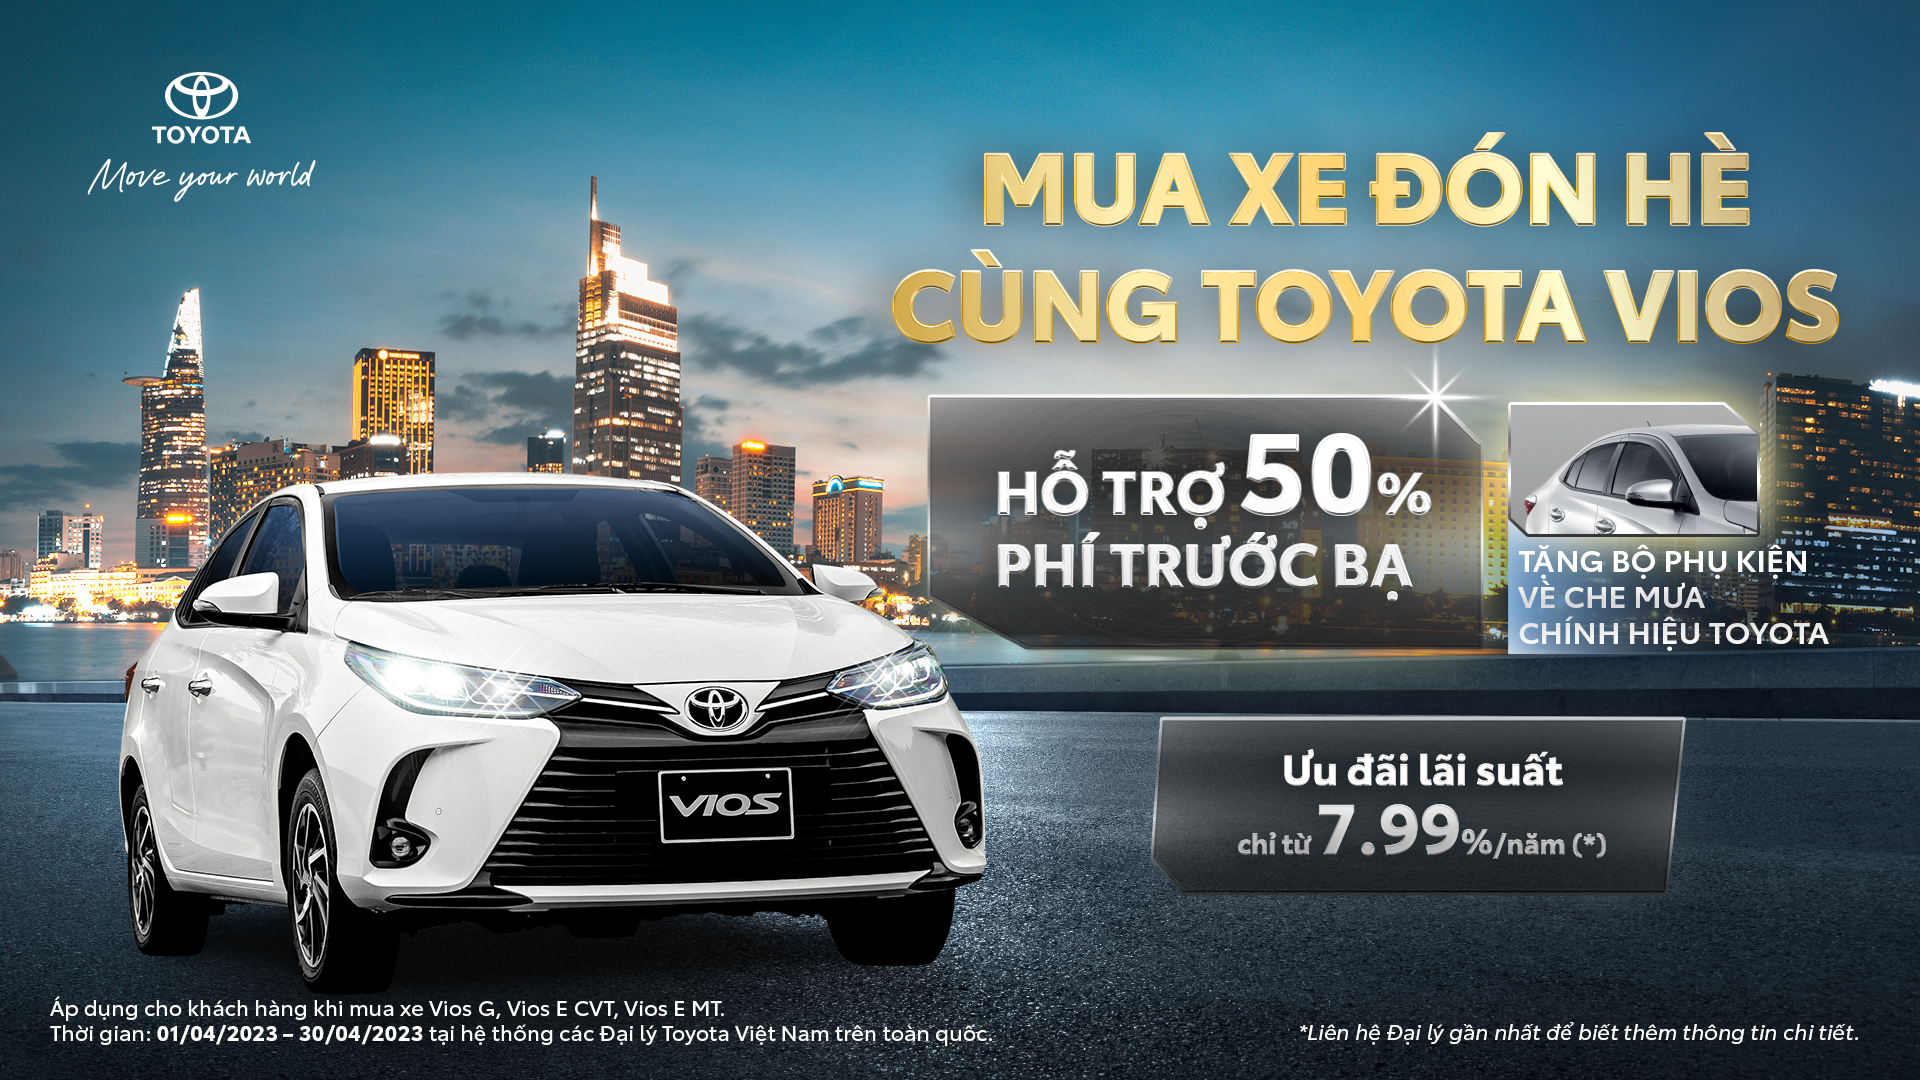 Chương trình “Mua xe đón hè cùng Toyota Vios”